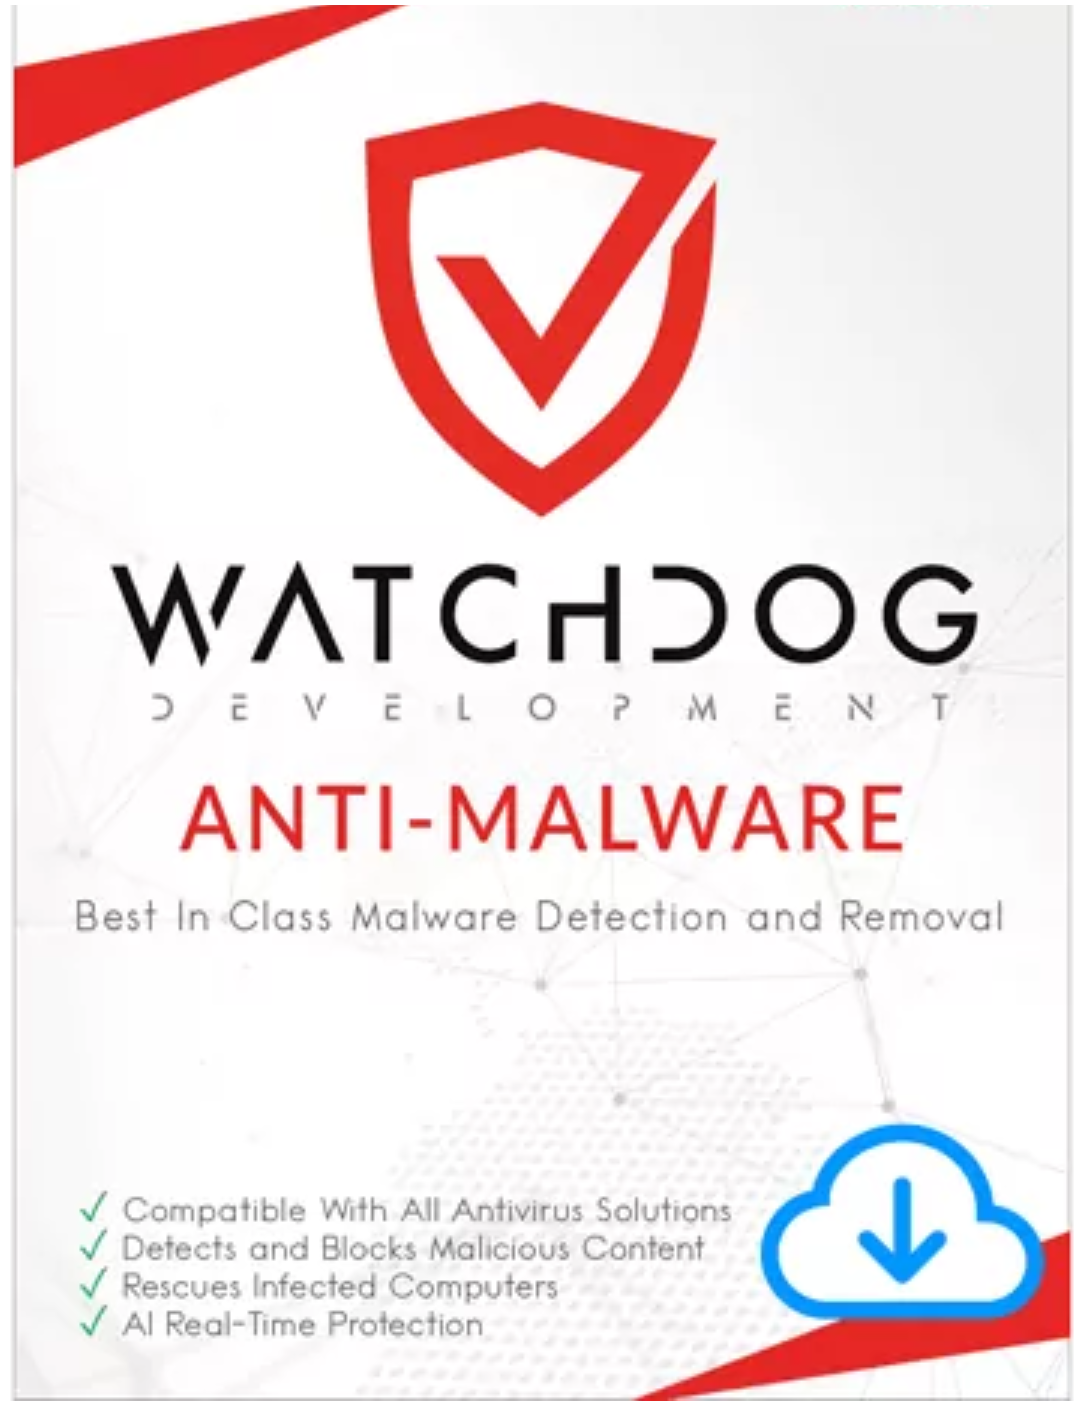 free instals Watchdog Anti-Virus 1.6.413